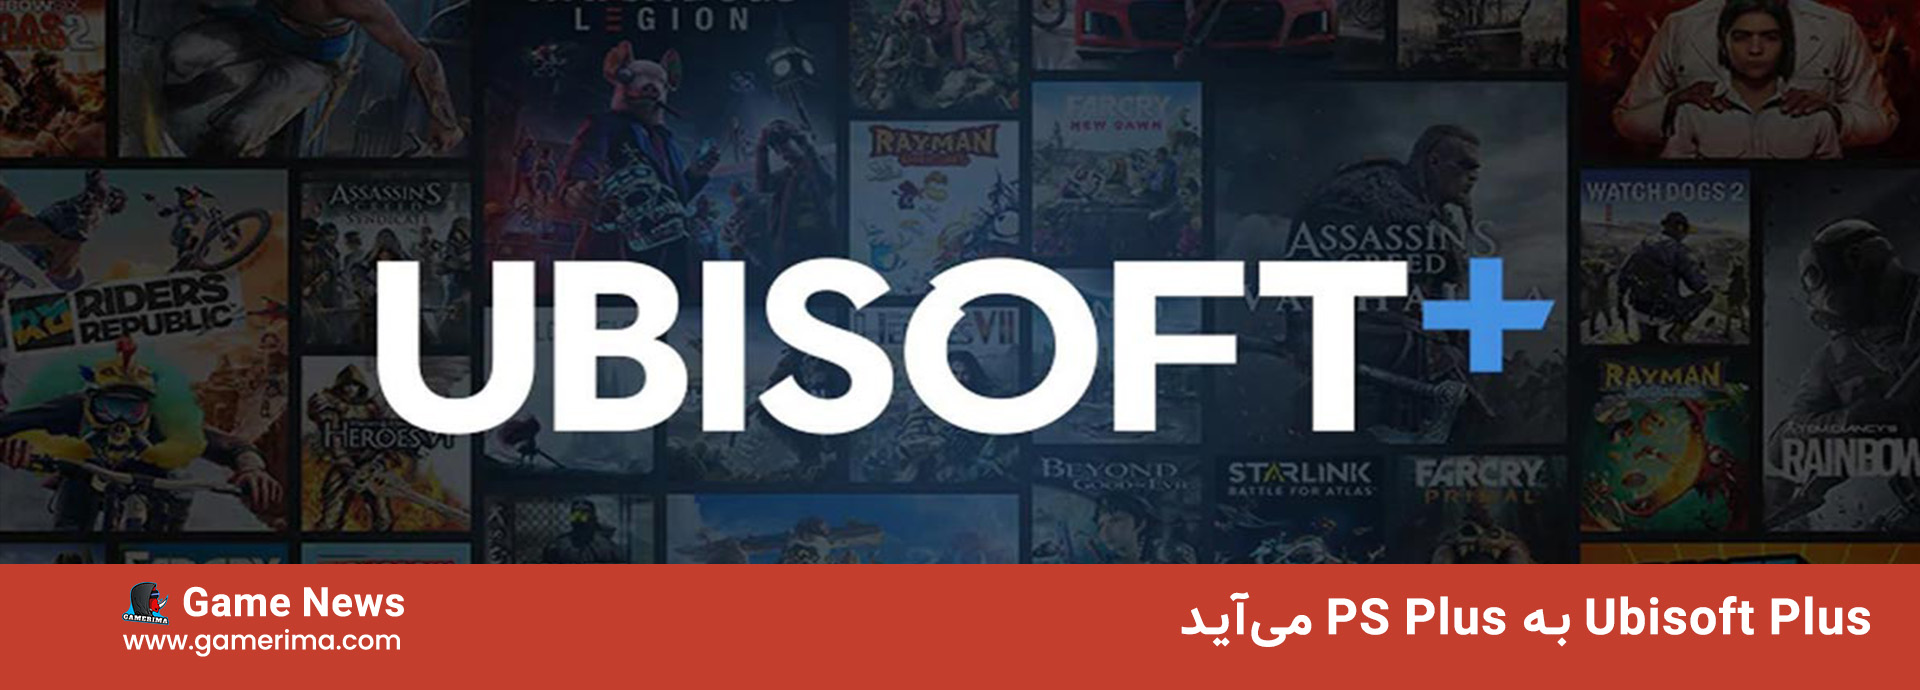 Ubisoft Plus joins PS Plus